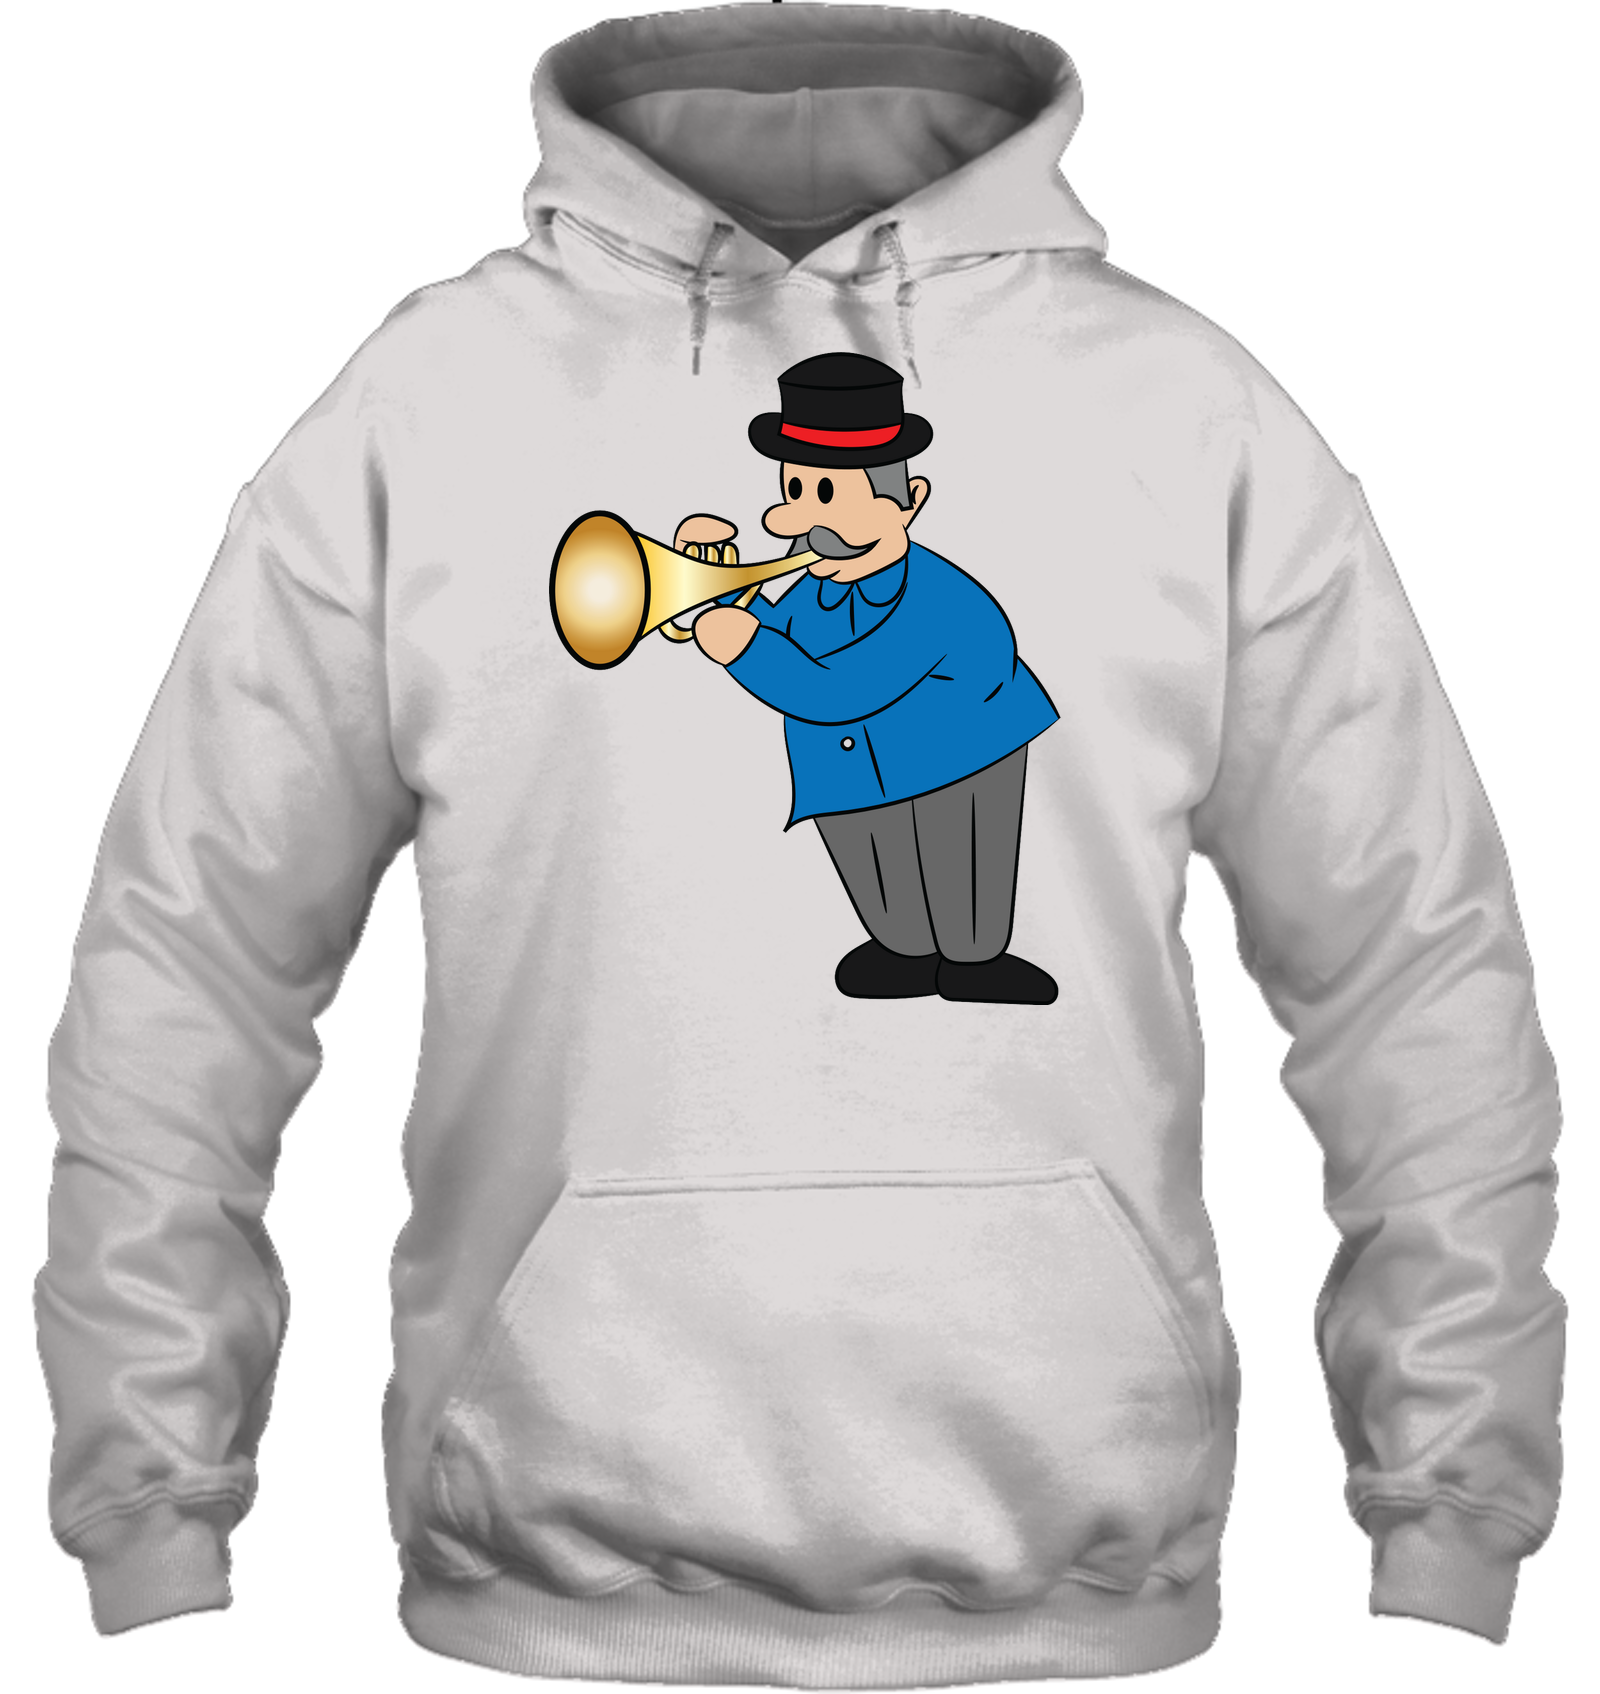 Man with Trumpet - Gildan Adult Heavy Blend™ Hoodie